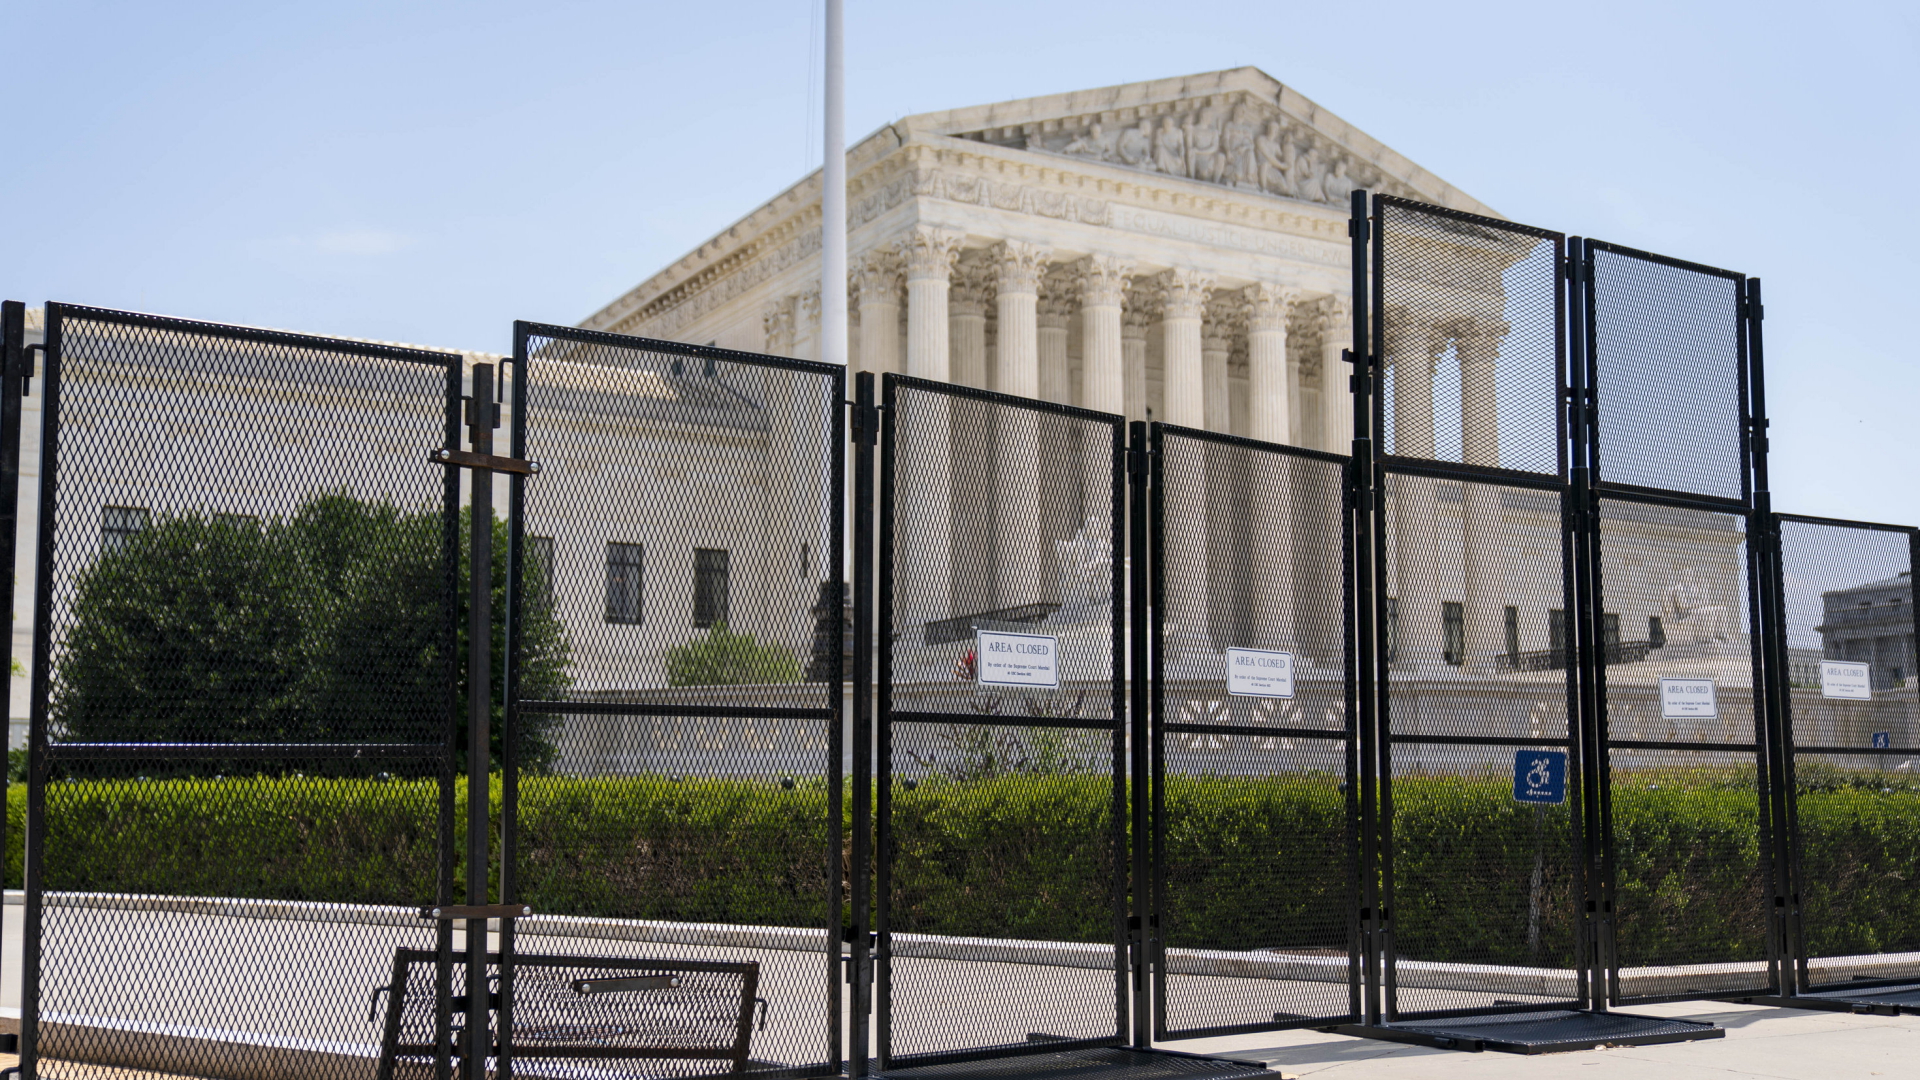 Vor dem Obersten Gerichtshof der USA in Washington D.C. haben die Behörden Absperrgitter aufgestellt